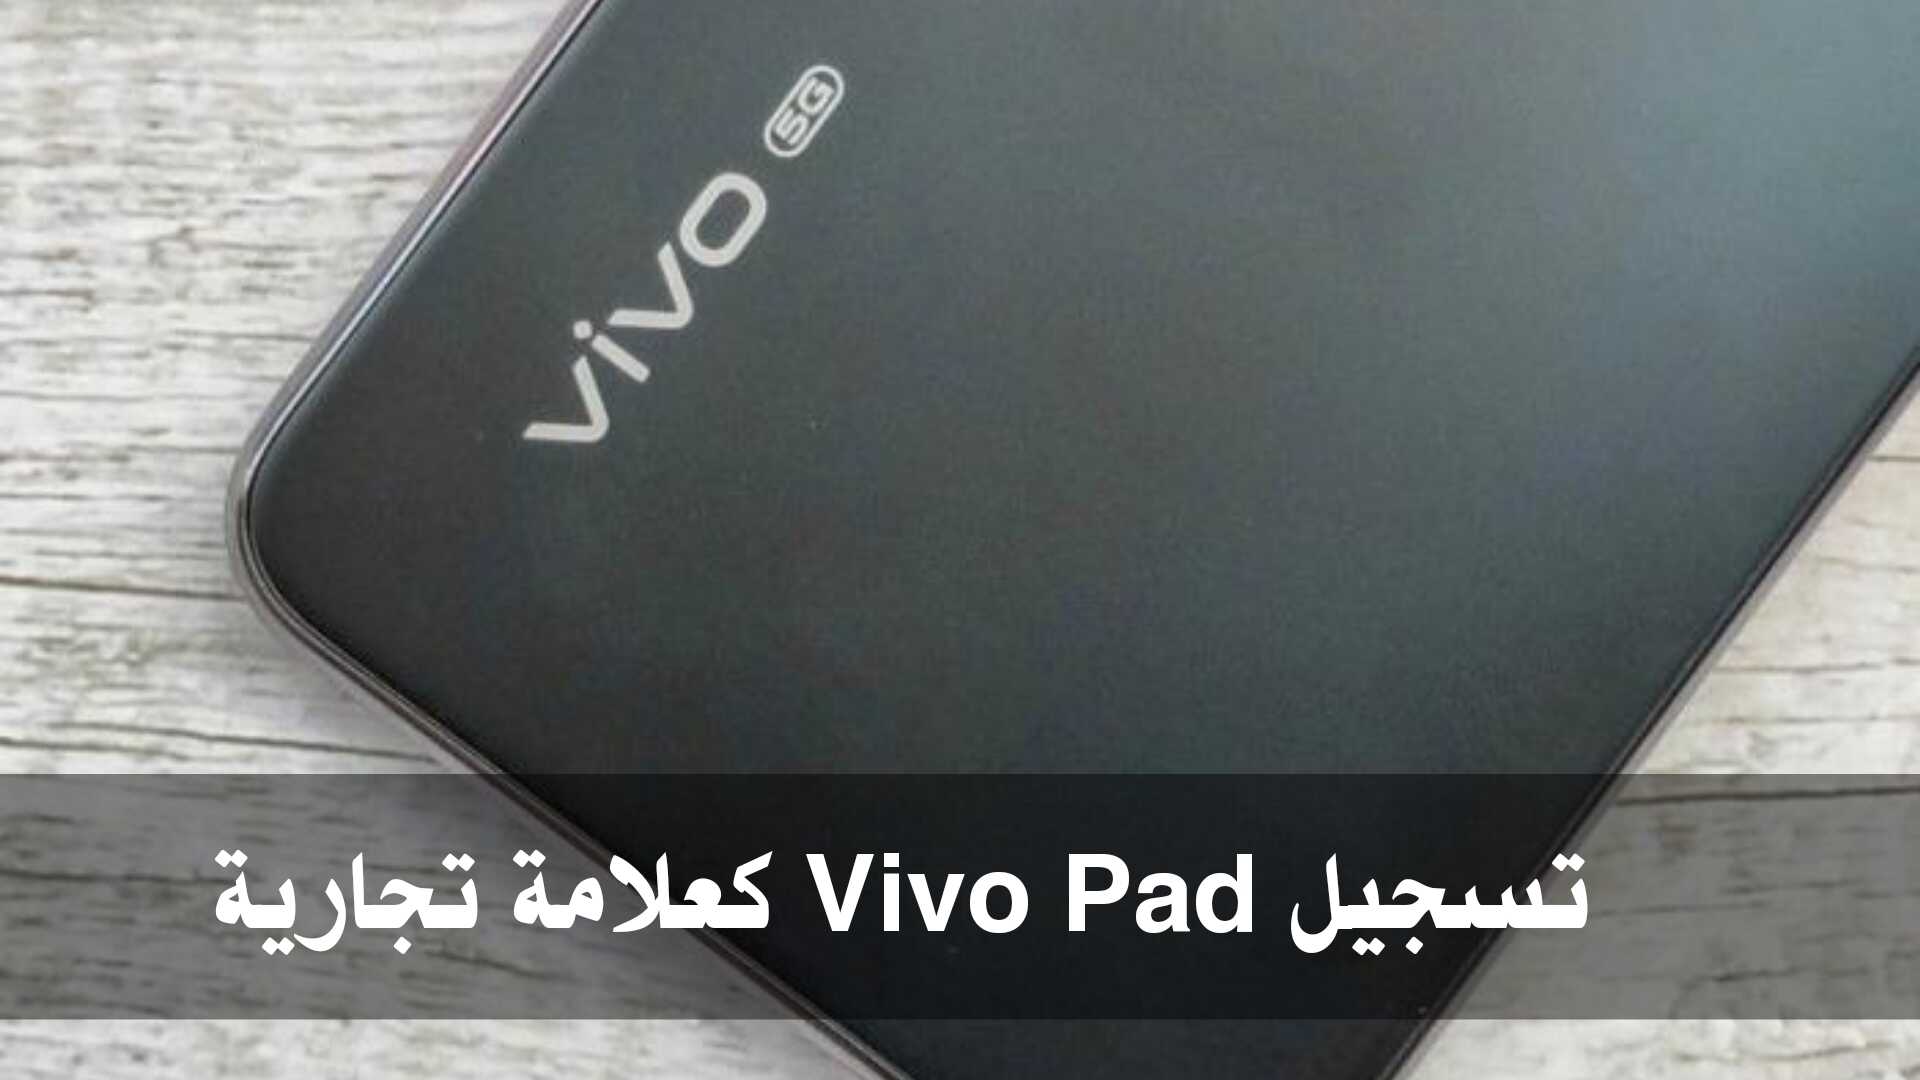 تسجيل Vivo Pad كعلامة تجارية في صناعة الاجهزة اللوحية